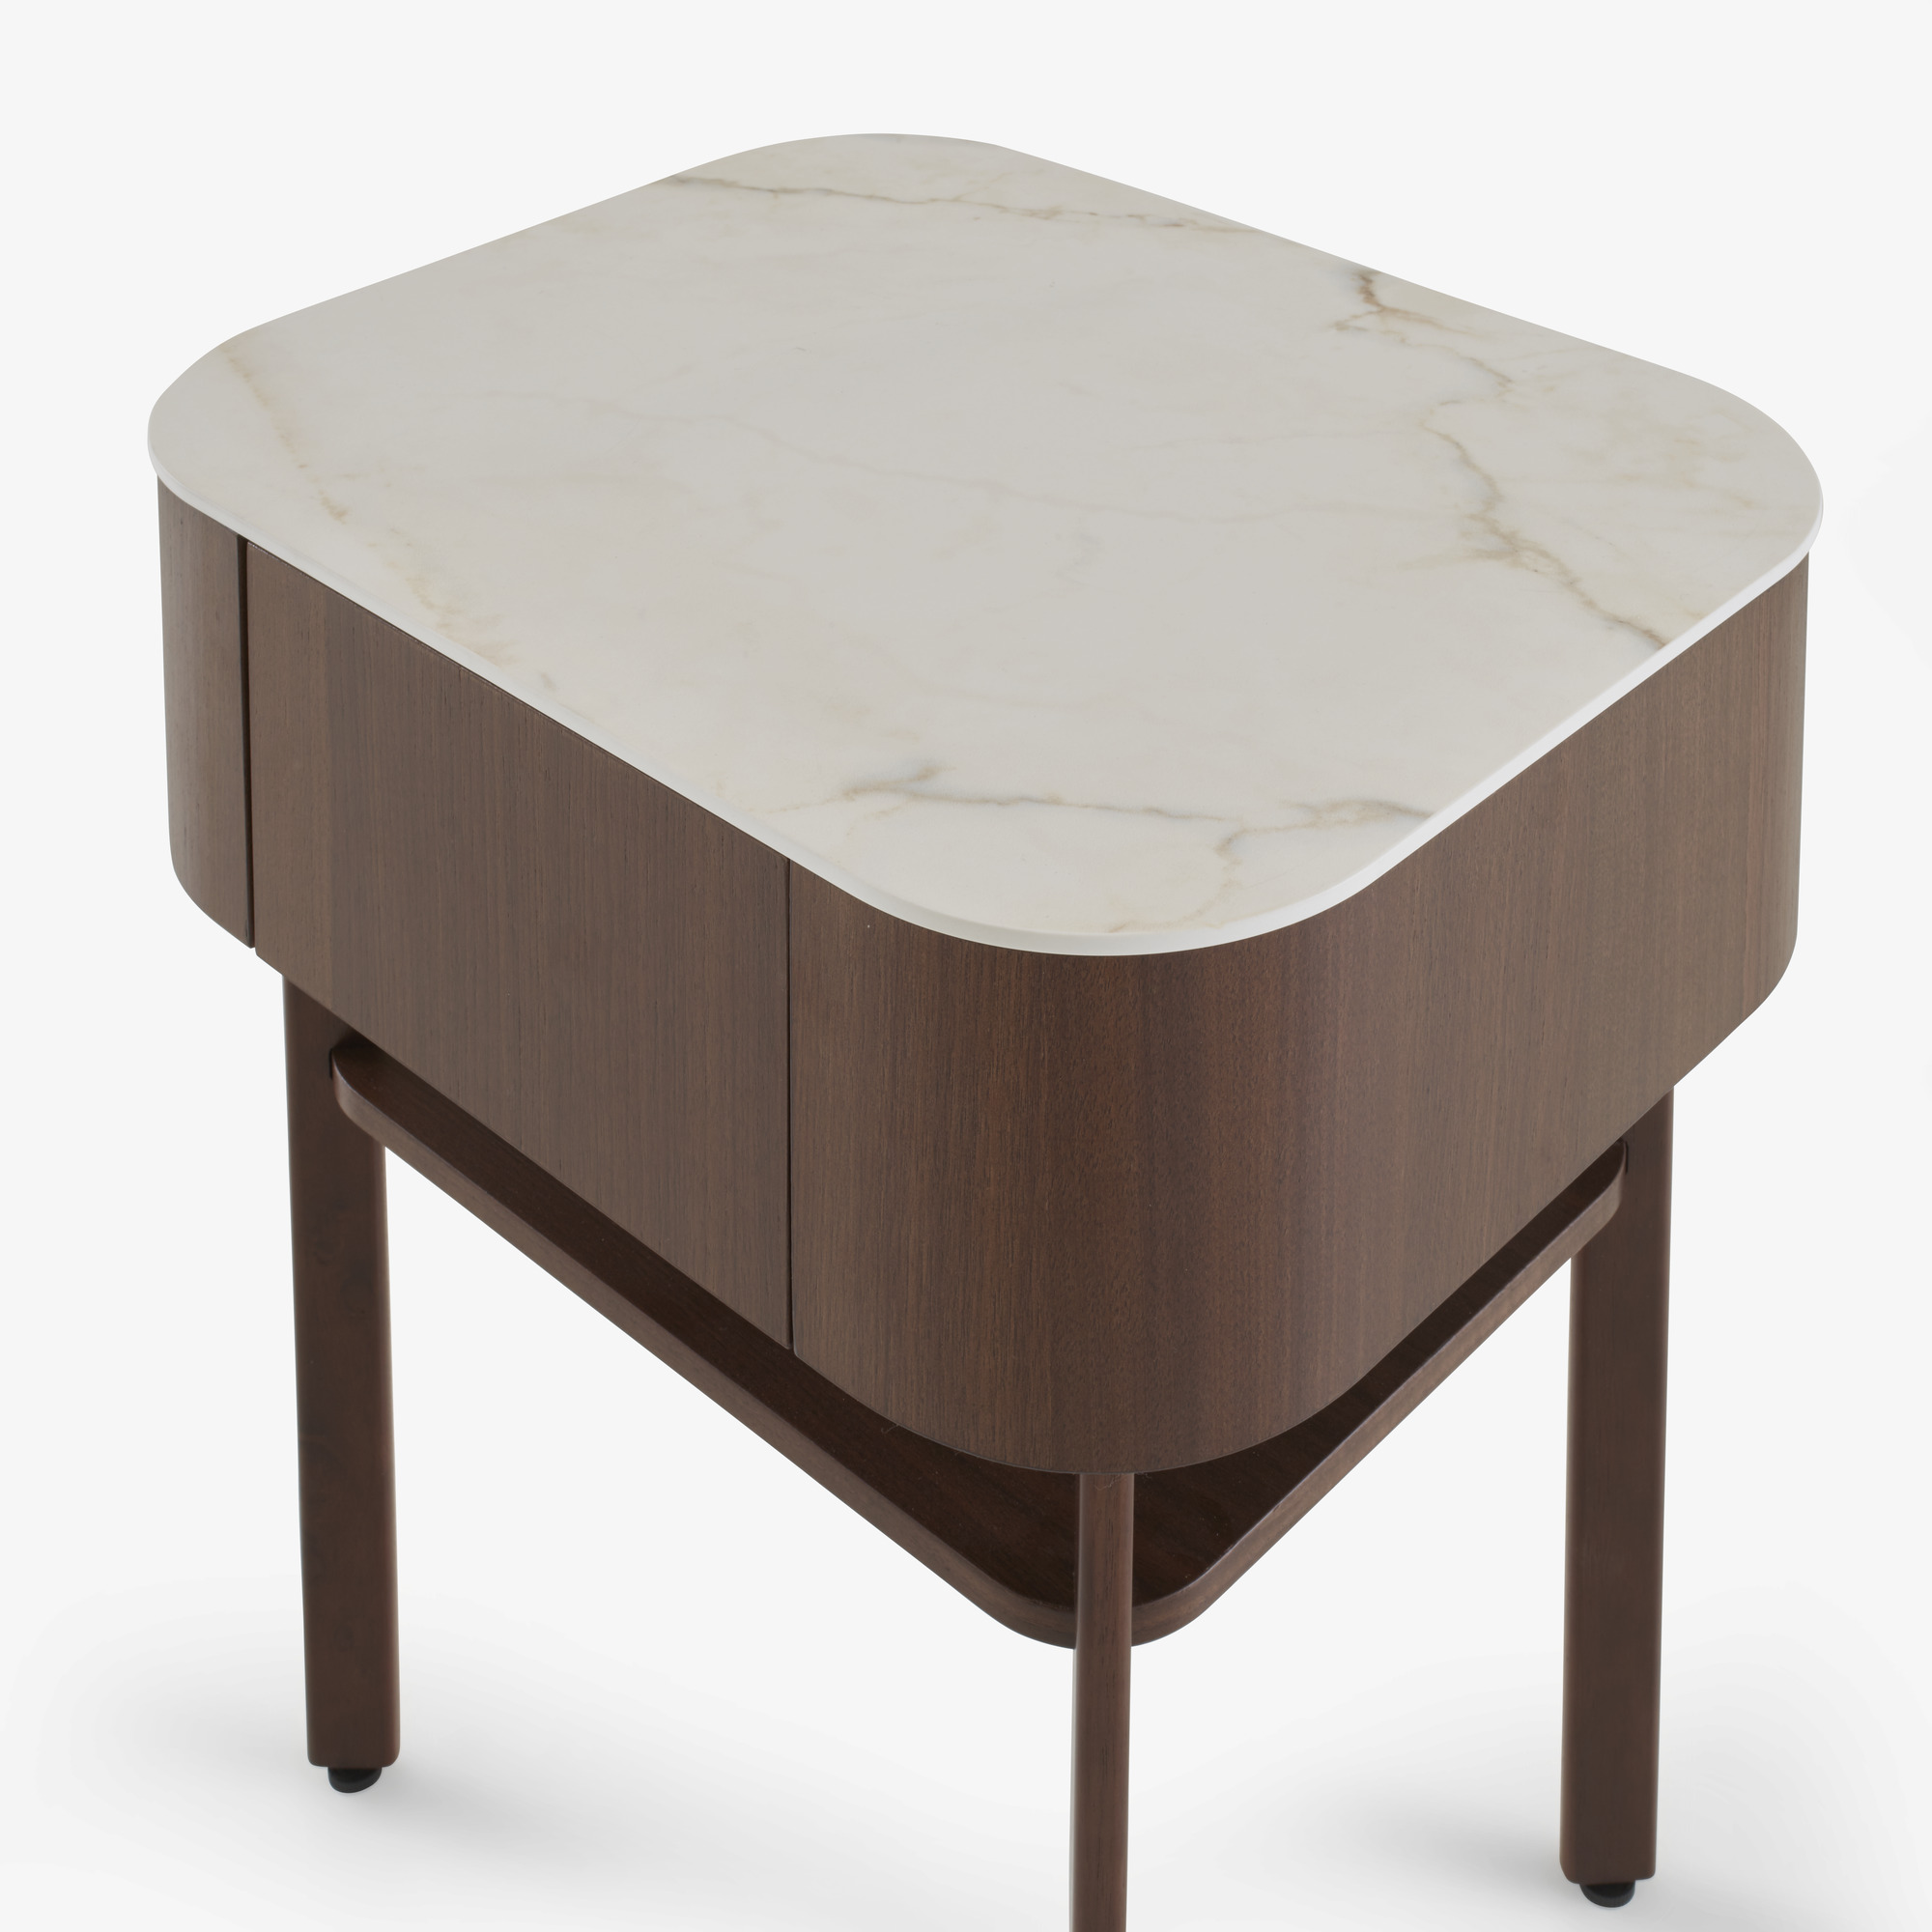 Image 床头柜 深色胡桃木 桌面由白色大理石效果的太空瓷制成 5